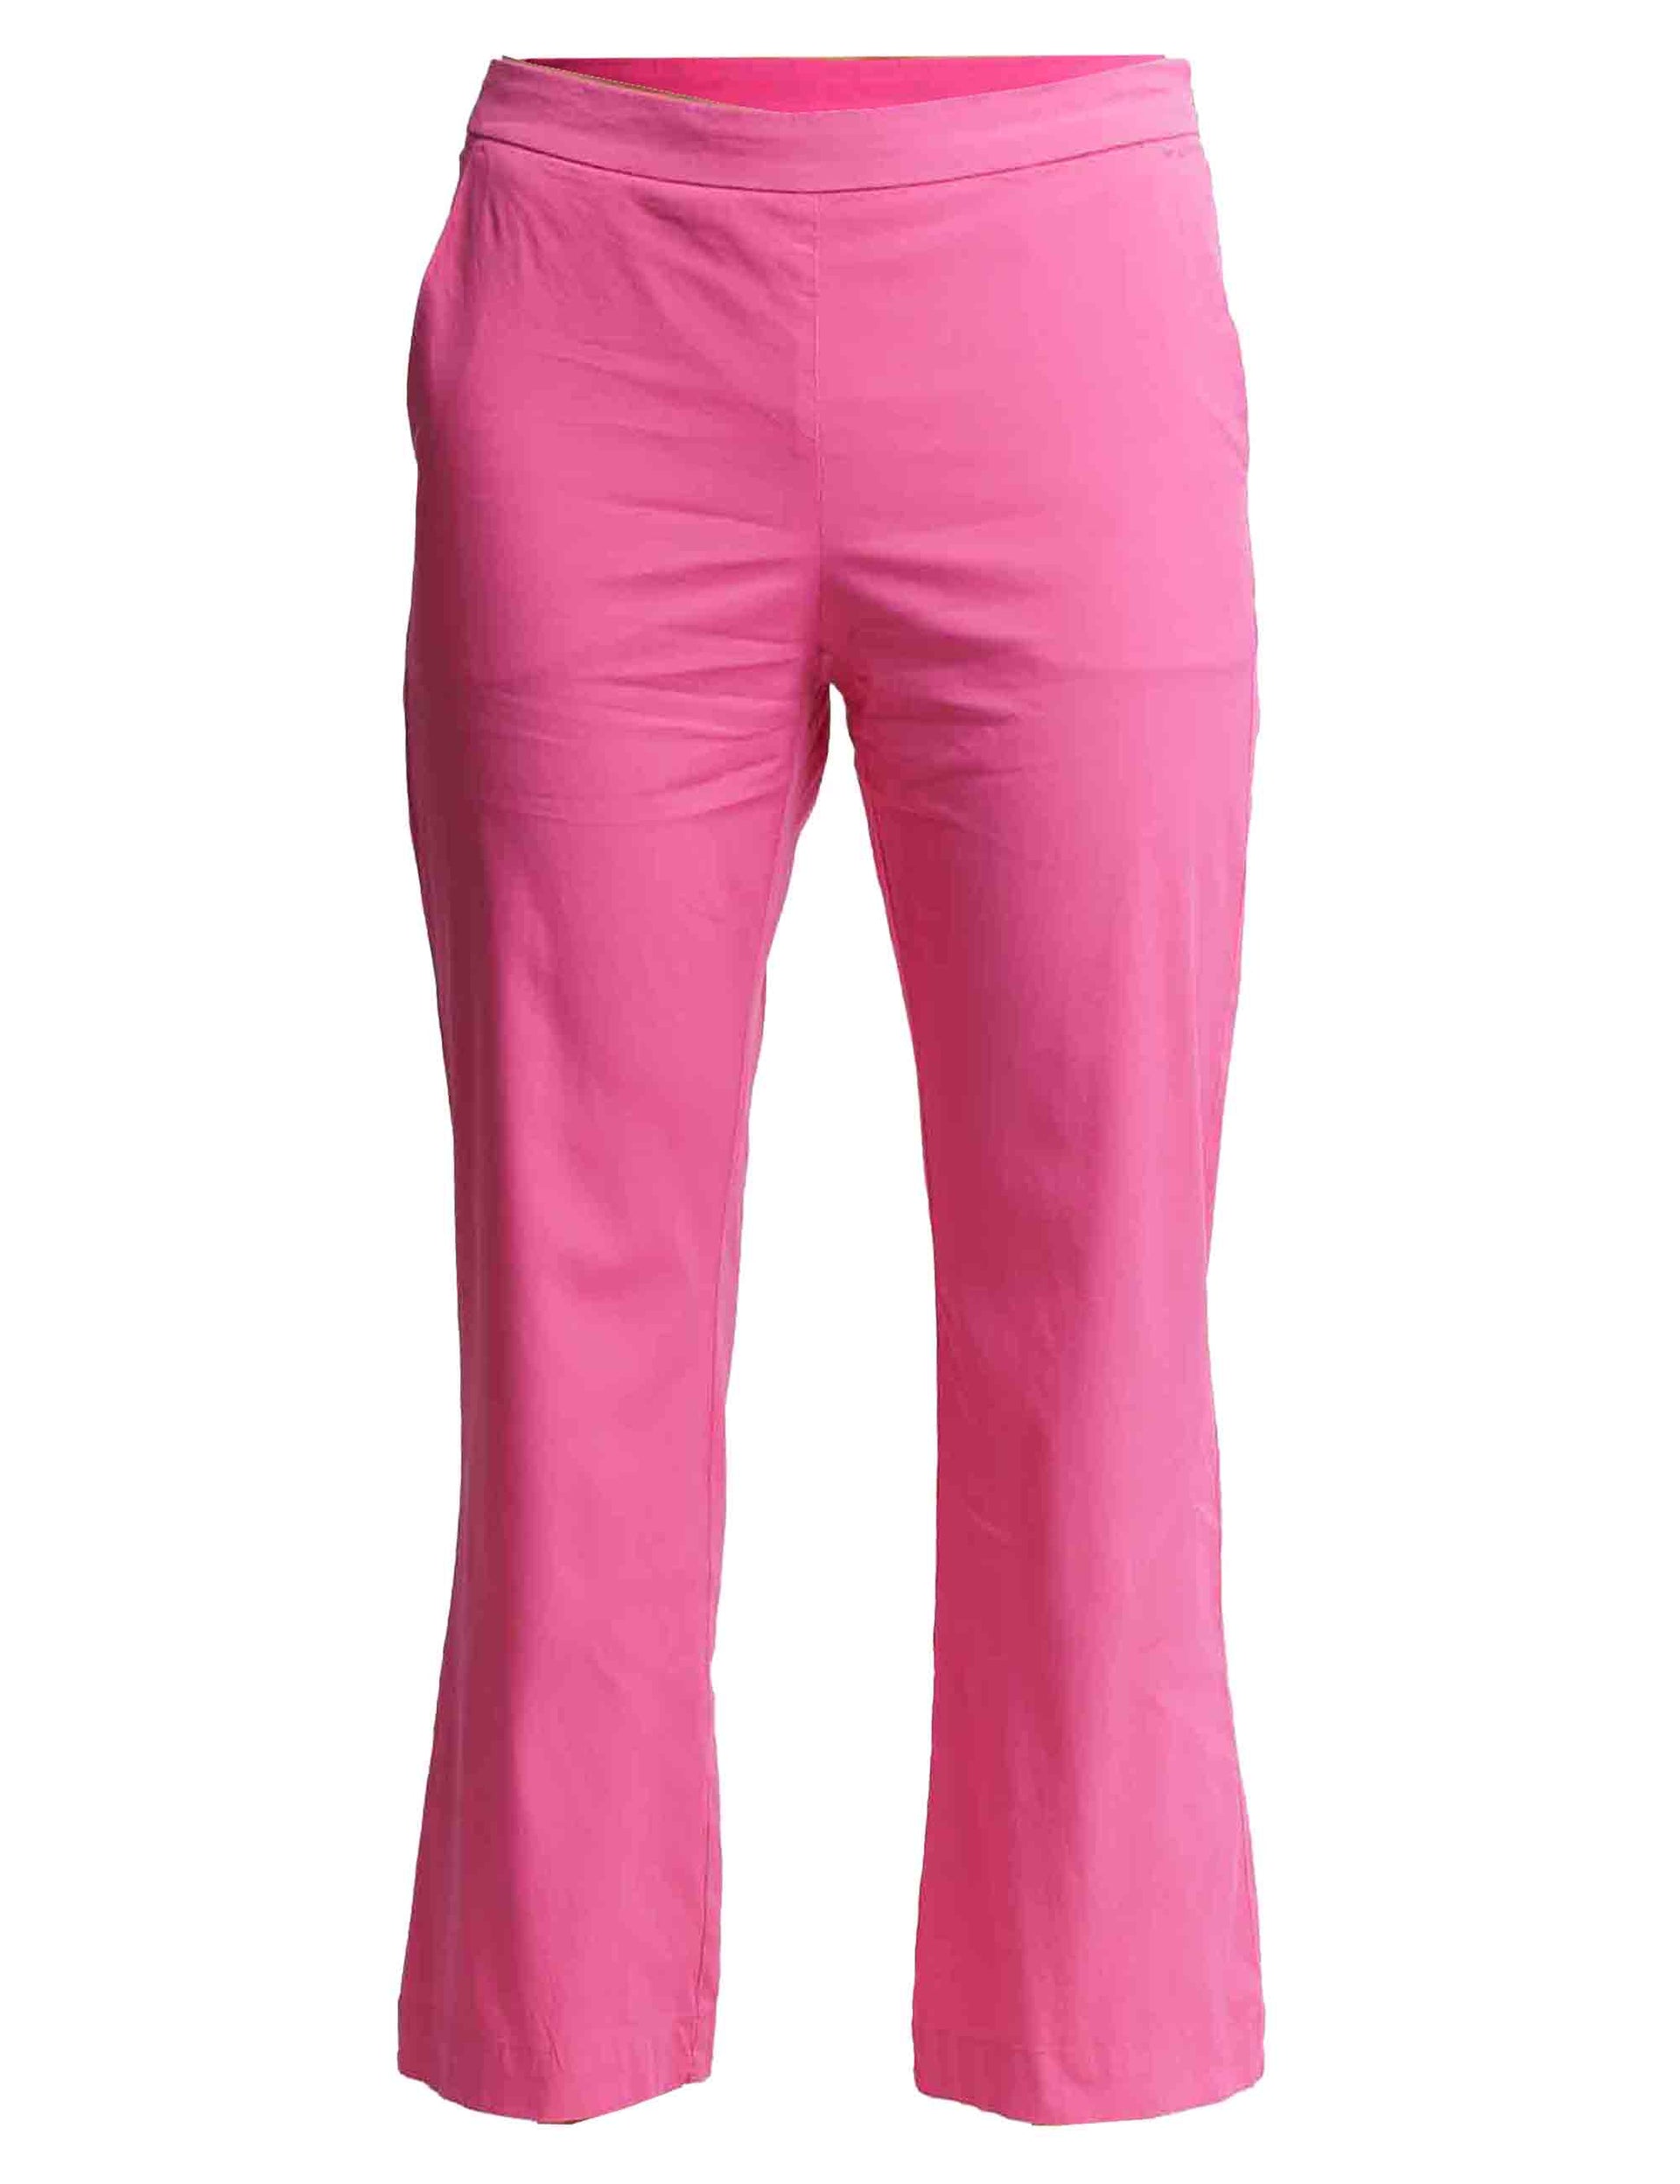 Women's poplin stretch trousers in pink cotton